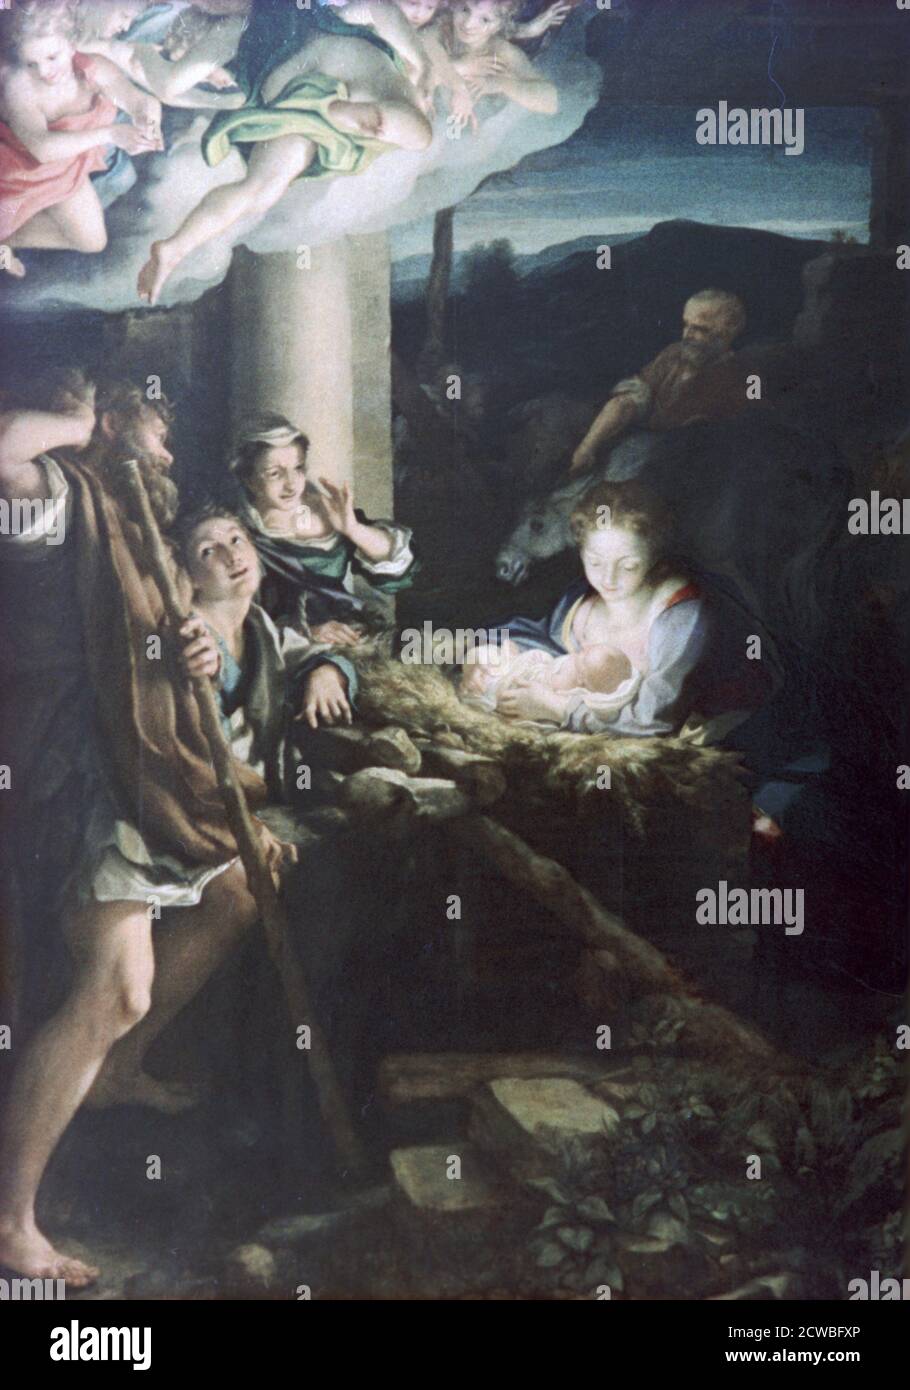 Presepio, 1522-1530. Artista: Antonio da Correggio. Correggio (1489-1534) è stato il principale pittore della scuola parmense dell'Alto Rinascimento italiano. Foto Stock